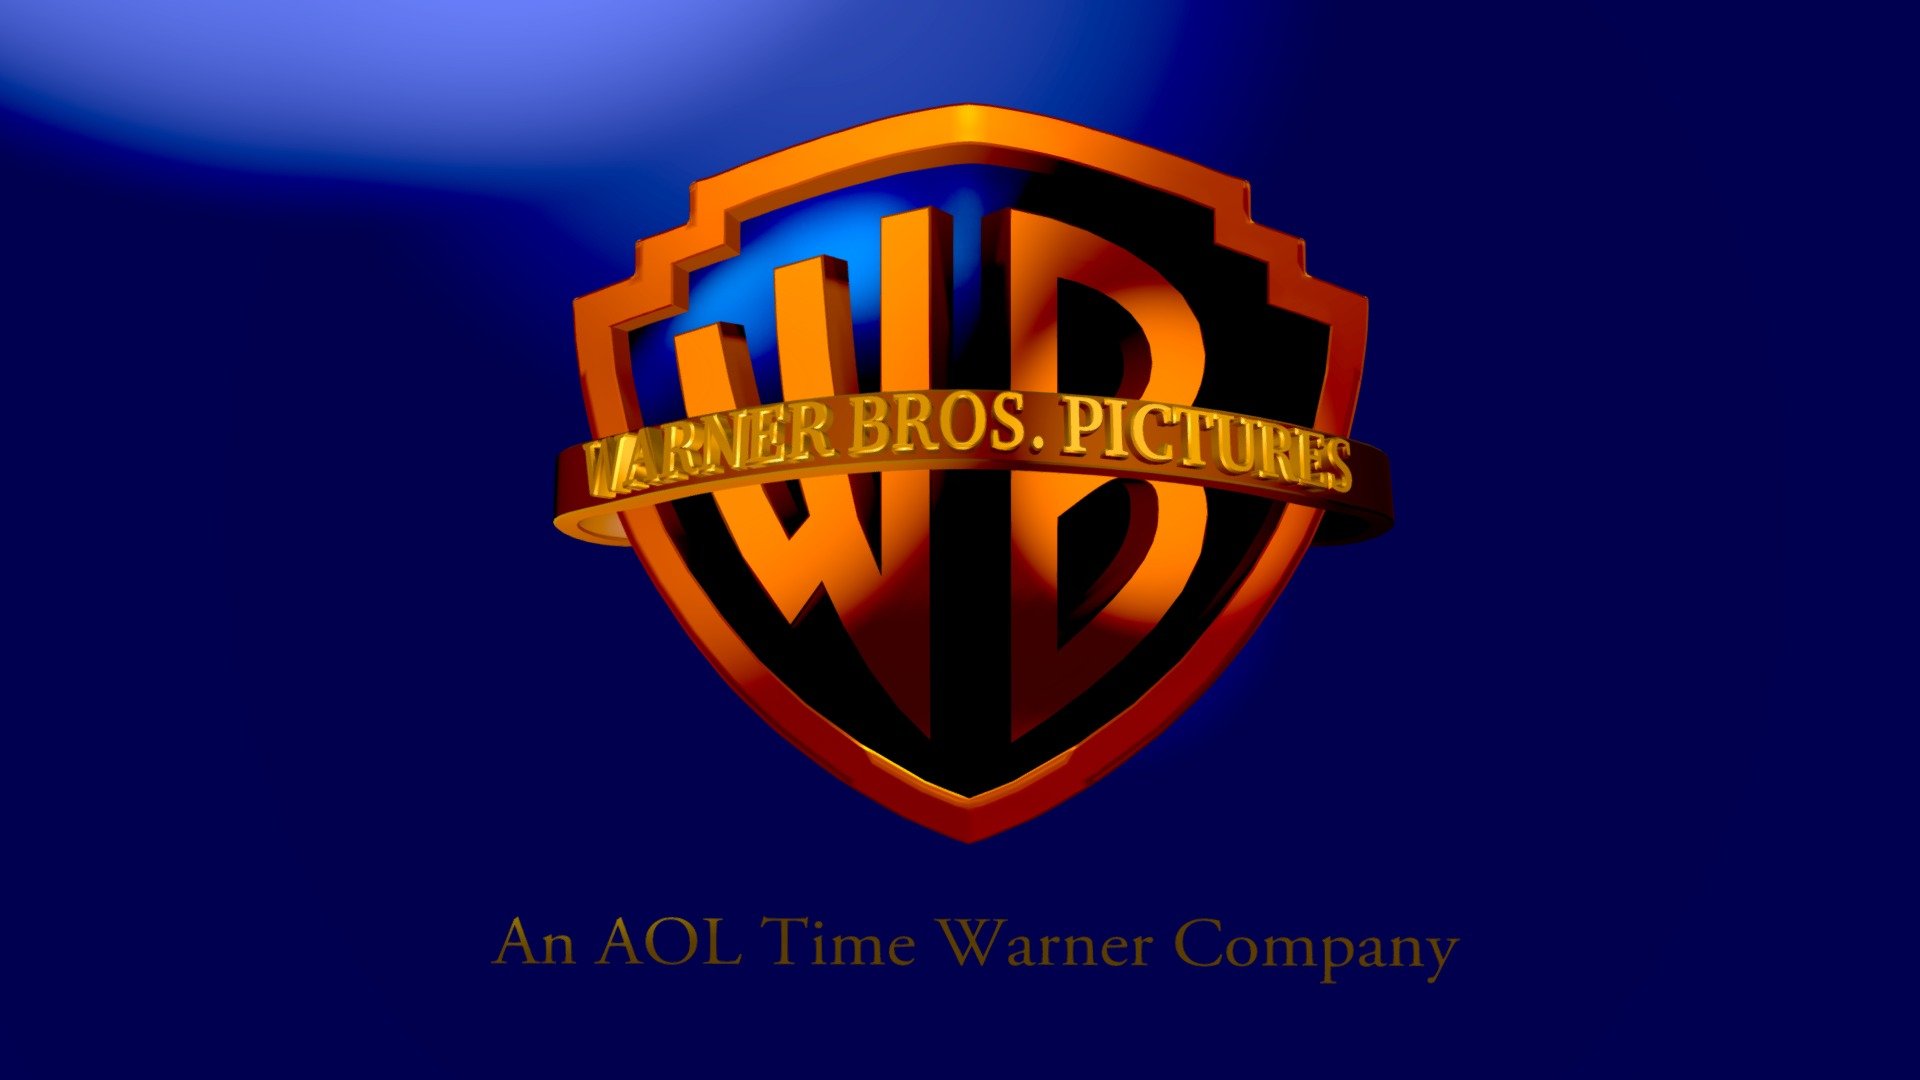 Warner Bros Pictures Logo 2001